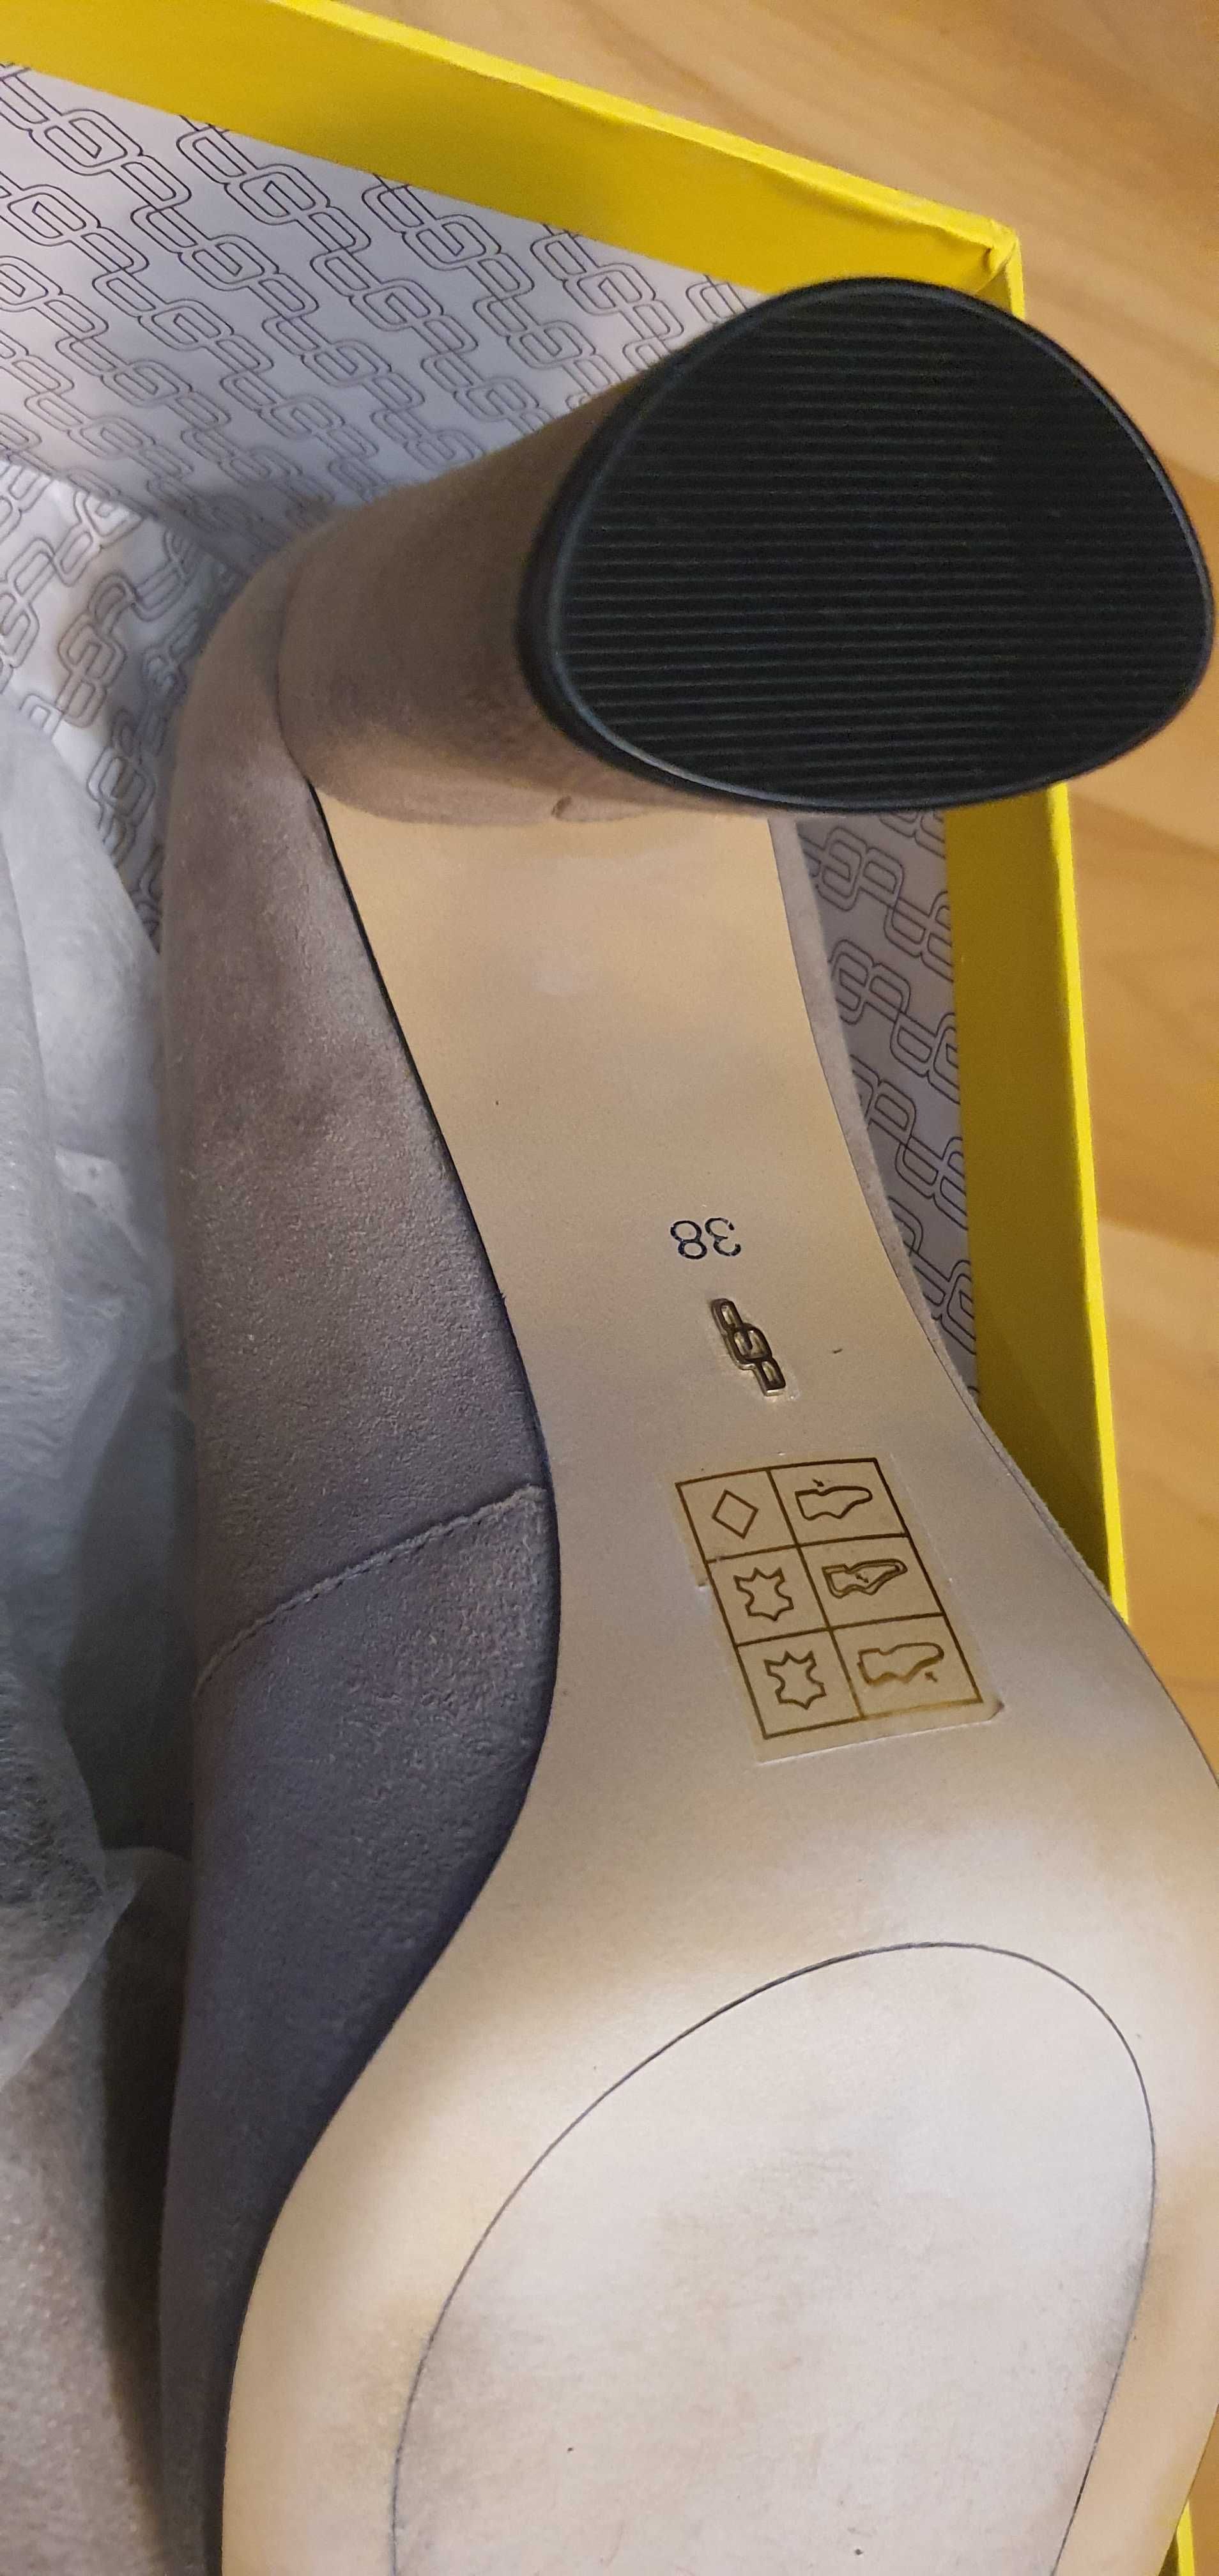 Европейский бренд, новые туфли Antonio Biaggi, 38 размер.